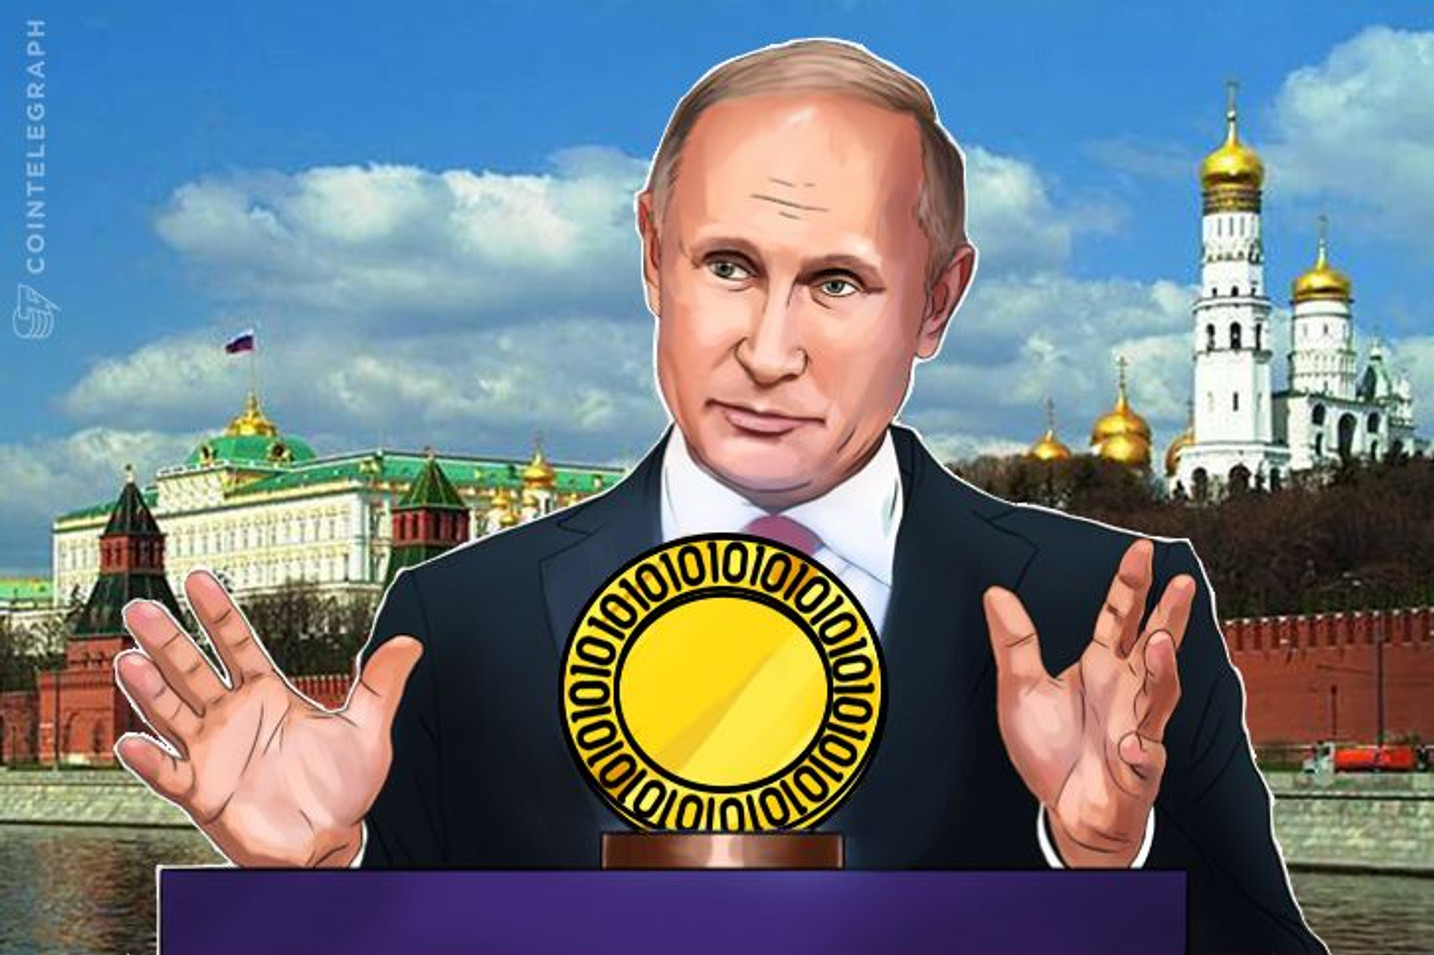 با امضای پویتن ارز دیجیتال روسی از راه رسید